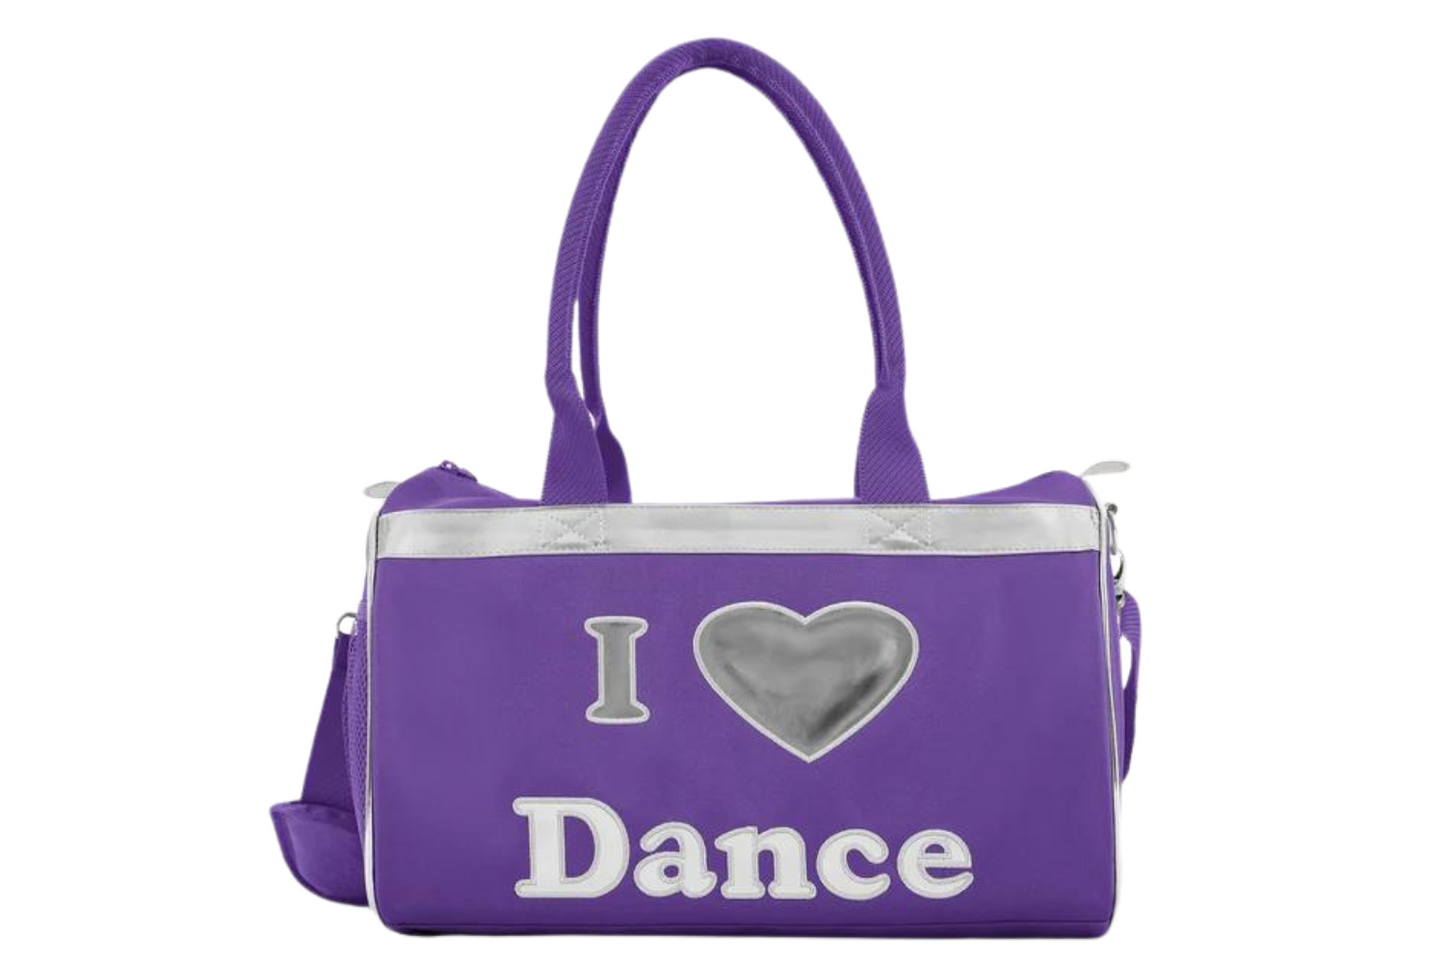 BLOCH A6146 "I LOVE DANCE" BAG